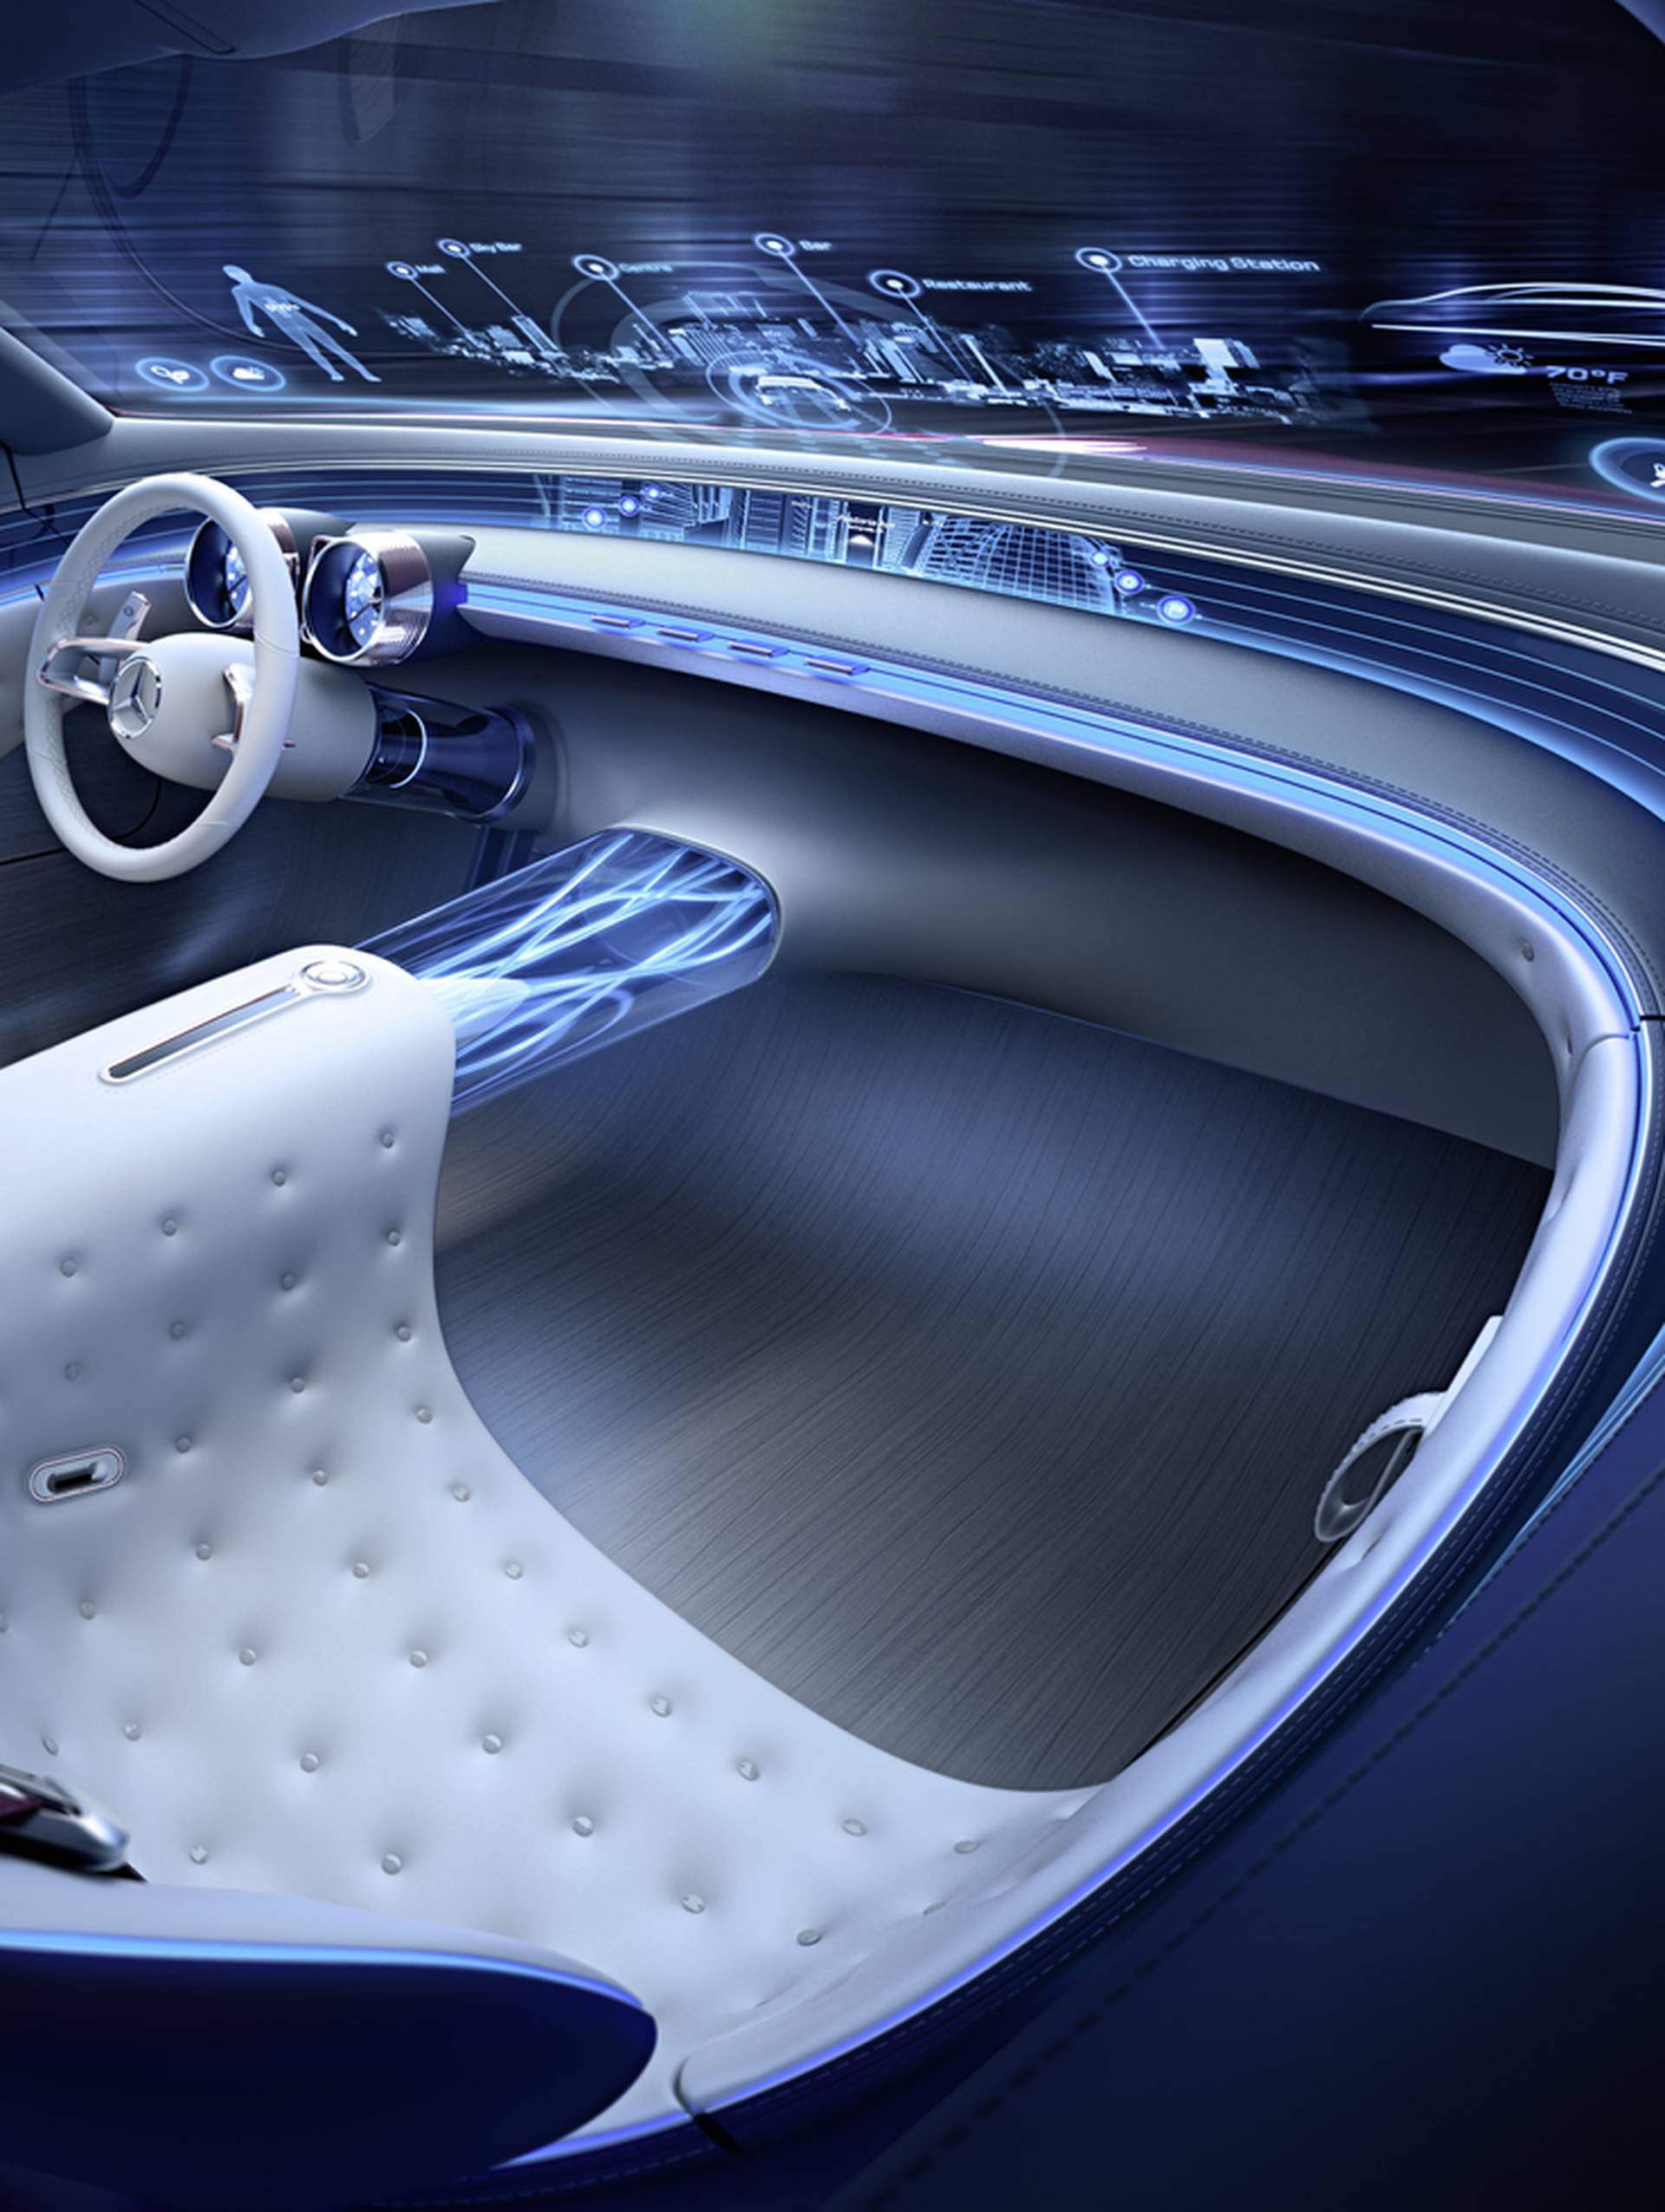 Futuristički pozdrav prošlosti: Novi Maybach je auto iz snova